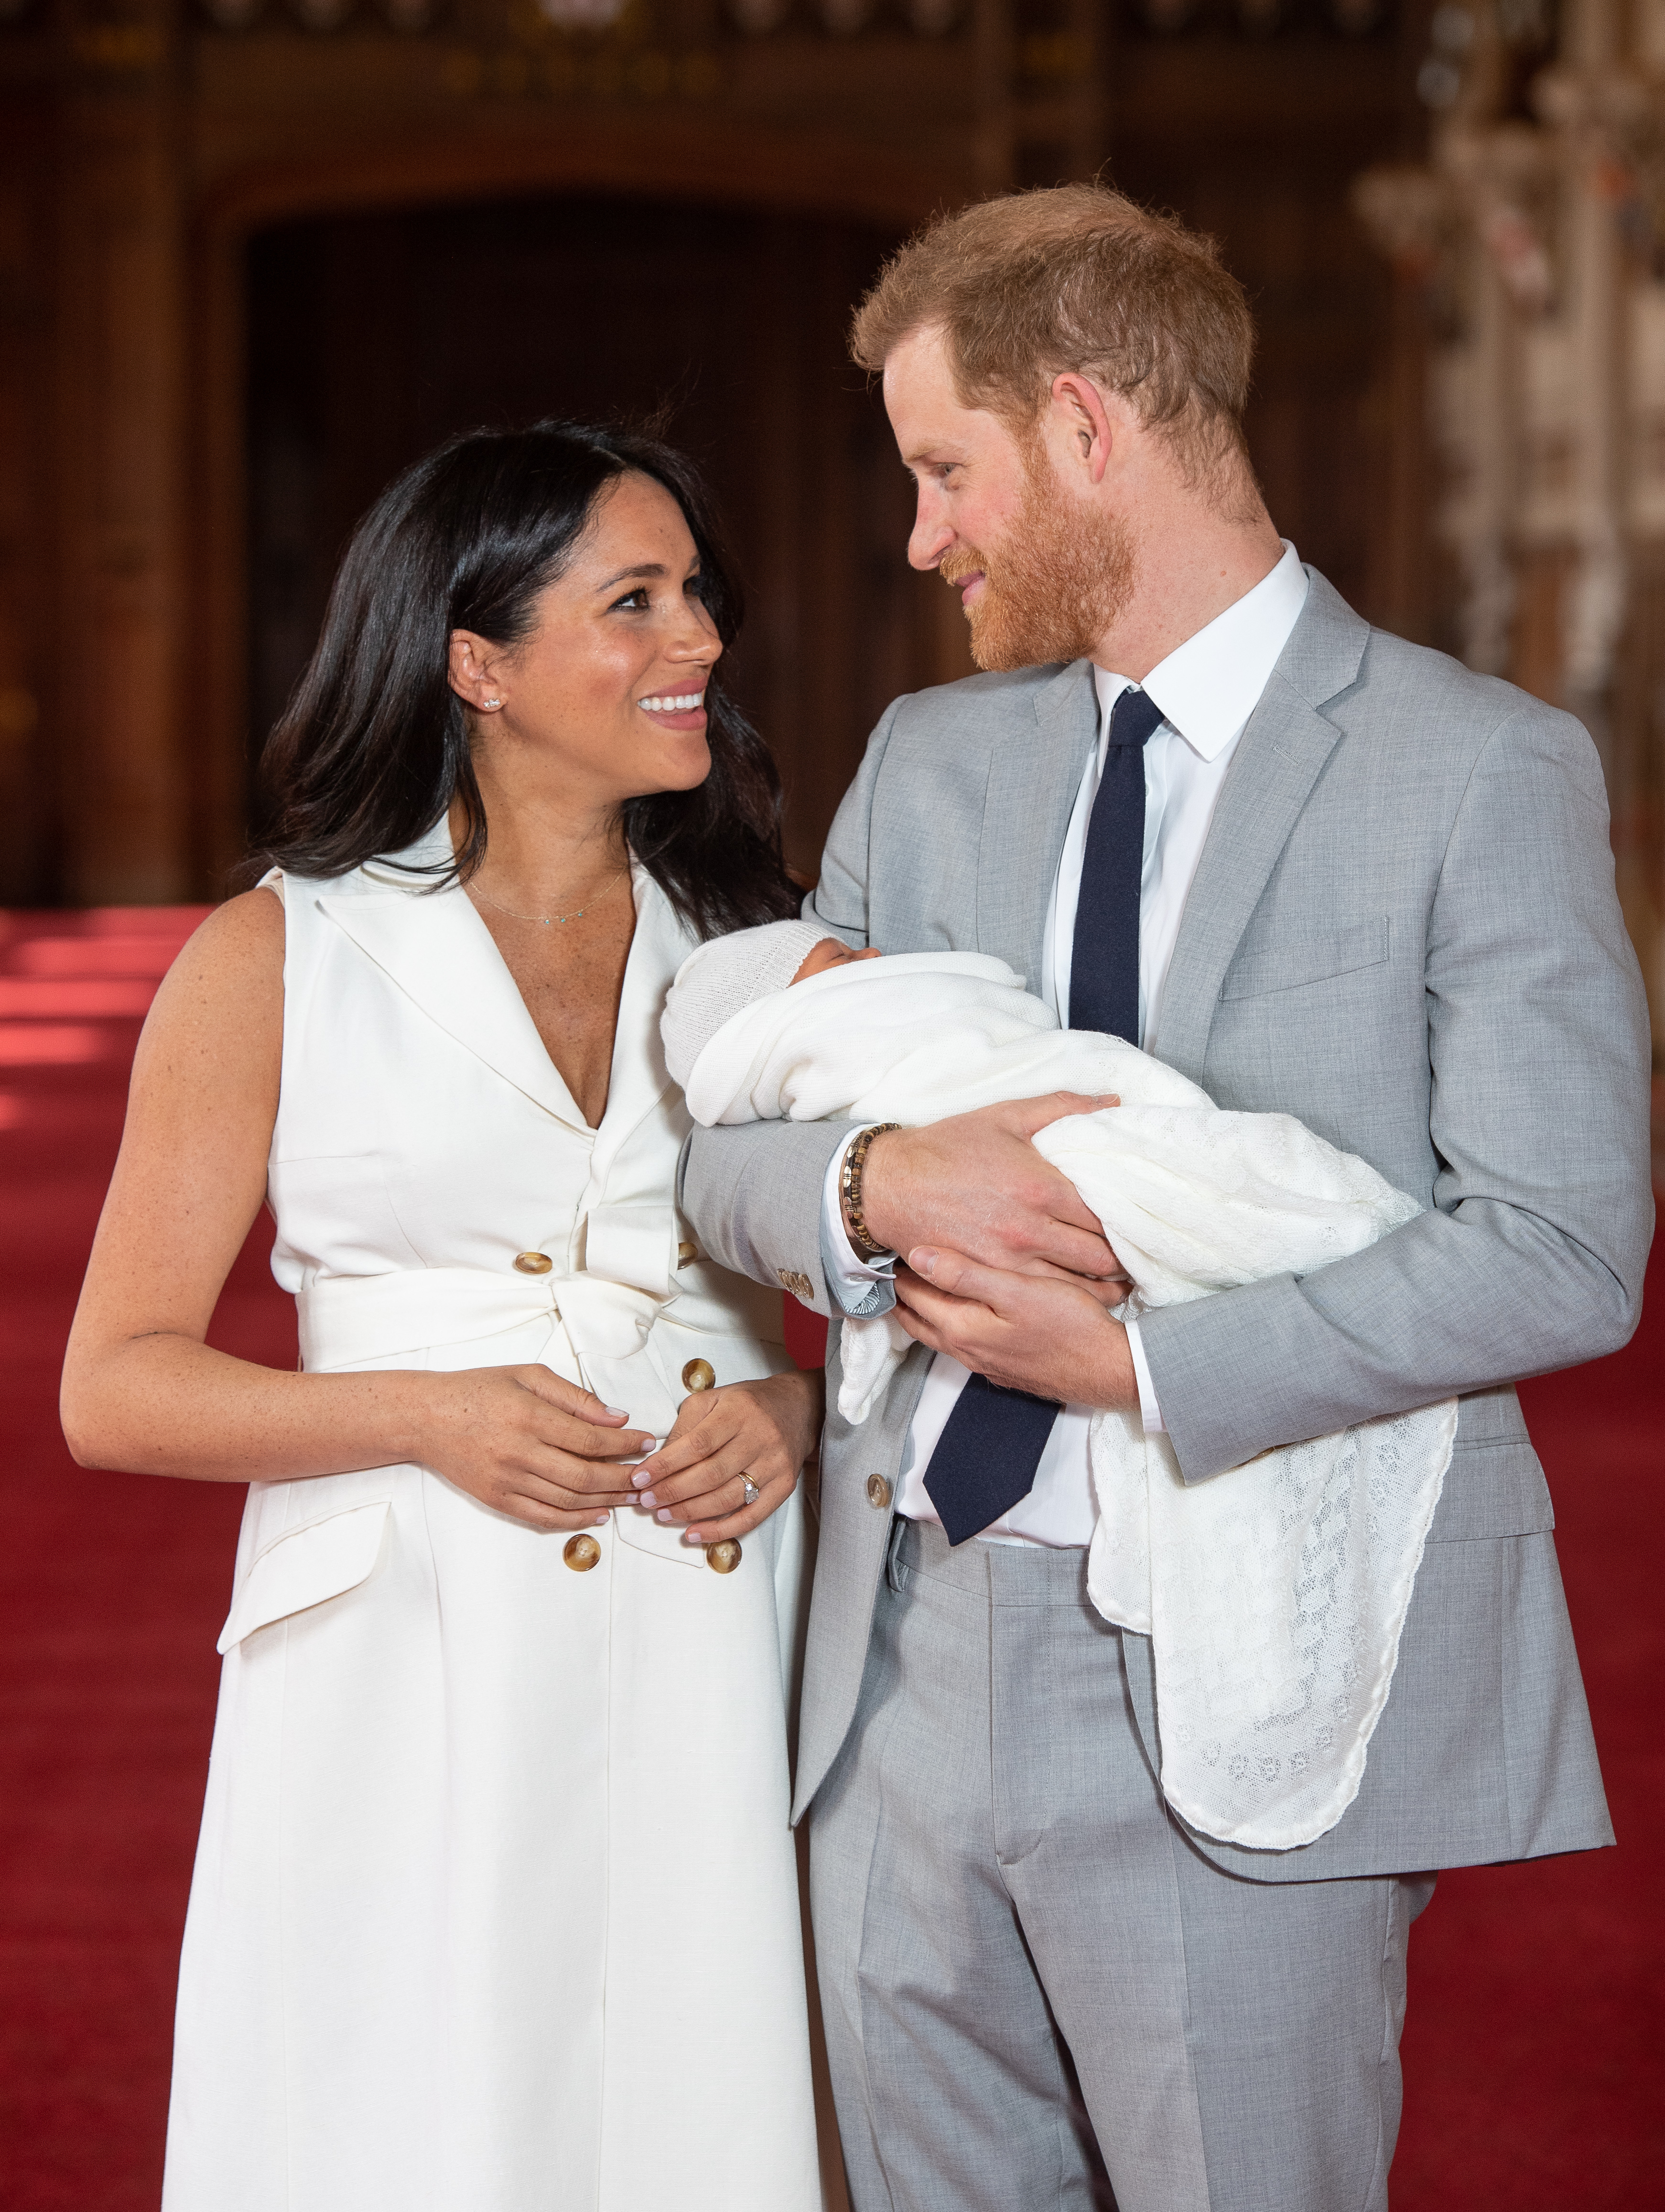 El príncipe Harry y Meghan posan con su hijo recién nacido Archie Harrison Mountbatten-Windsor, el 8 de mayo de 2019 en Windsor, Inglaterra. | Foto: Getty Images